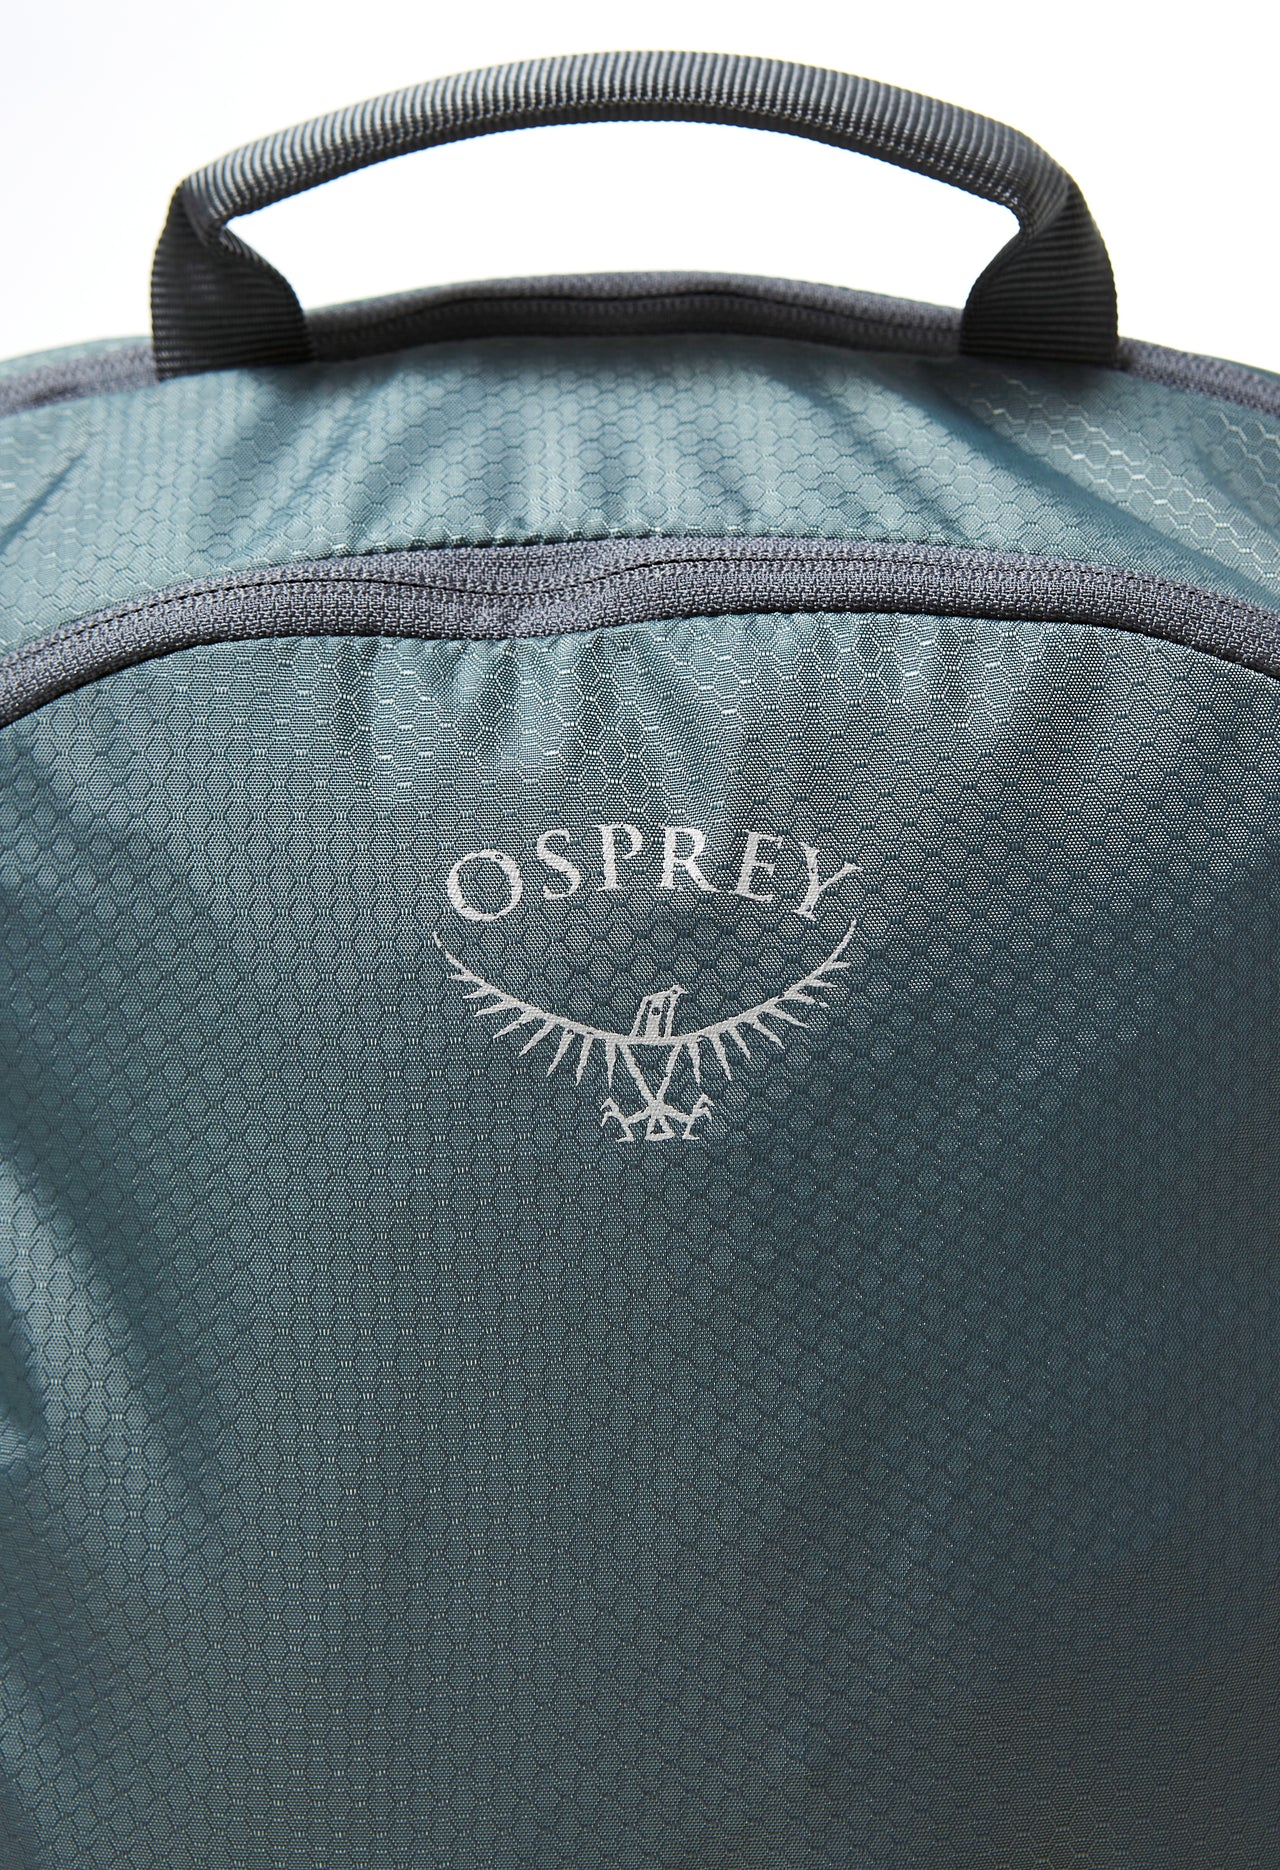 Osprey Poco LT Backpack - Tungsten Grey